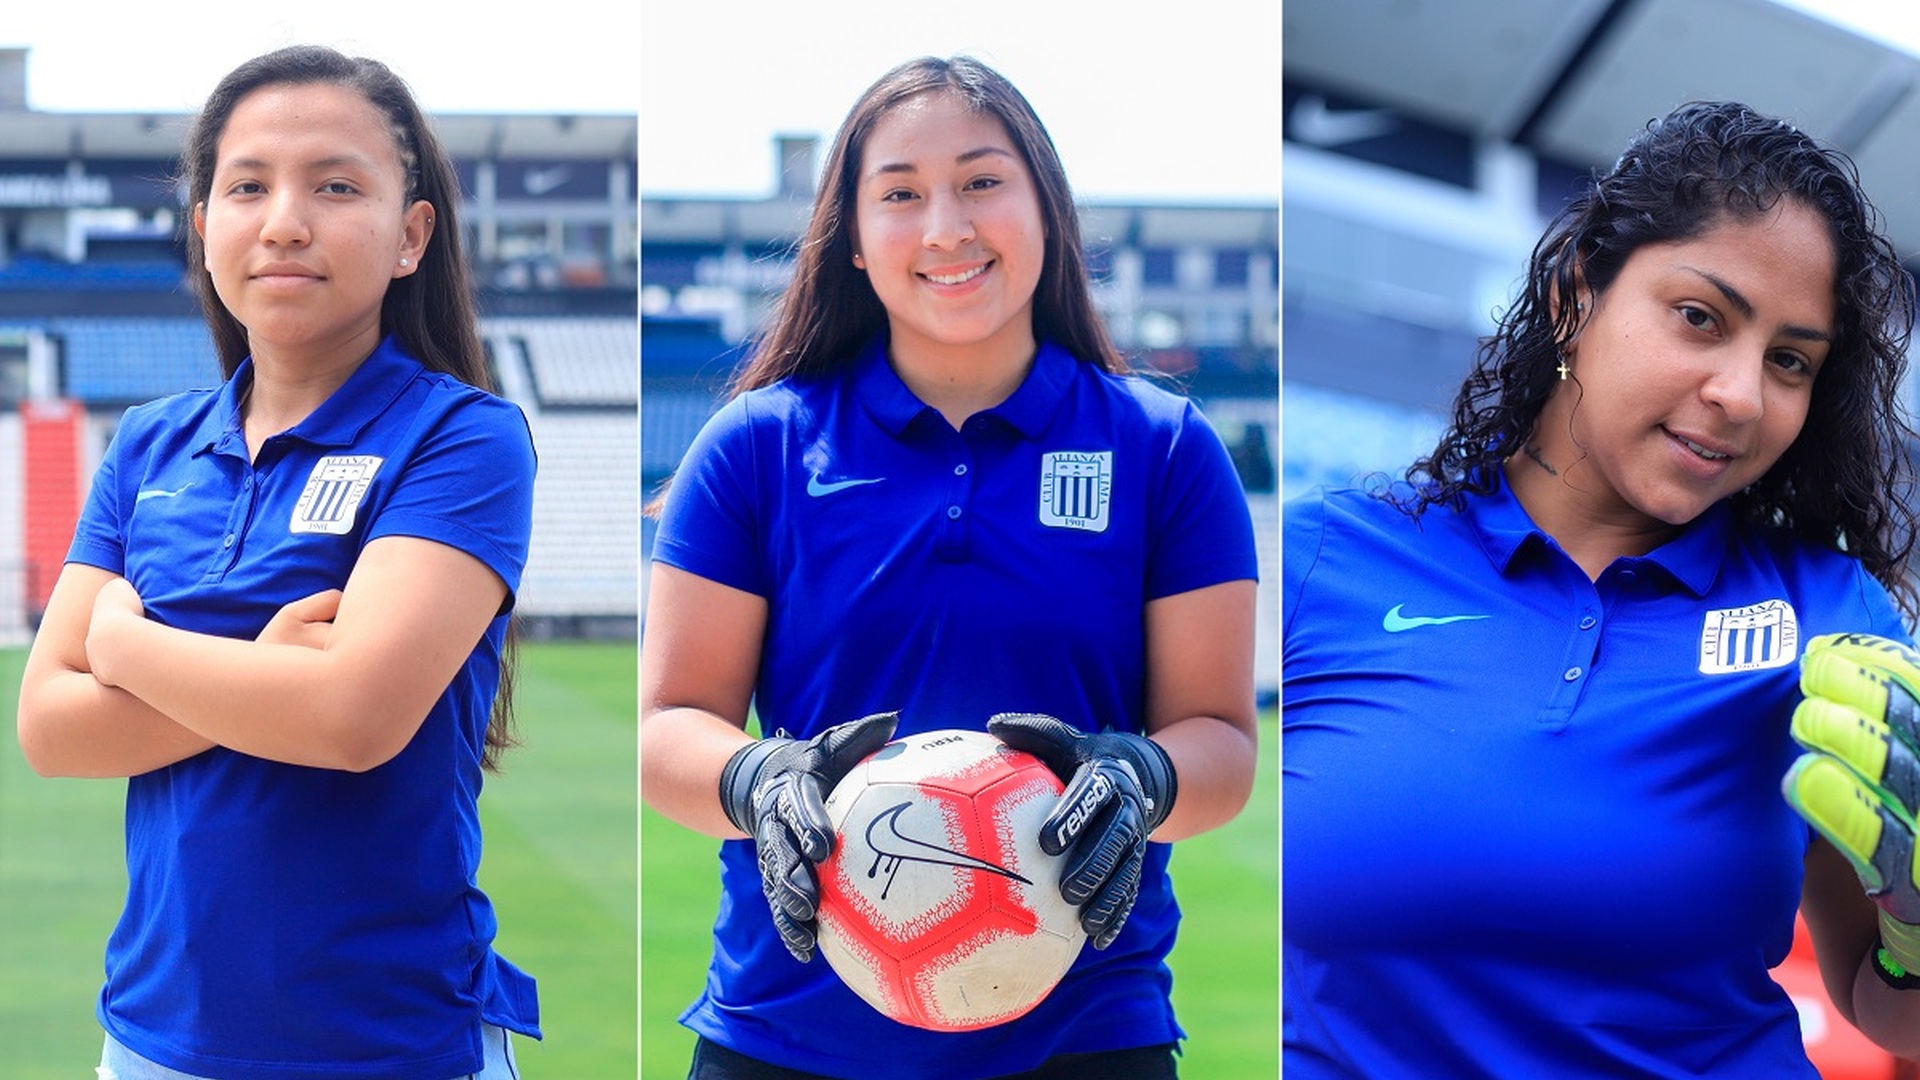 De izquierda a derecha, Allison Azabache, María Fernanda Dávila y Fiorella Valverde son las nuevas jugadoras de Alianza Lima para el torneo de la próxima temporada. (ClubAlianzaLima)